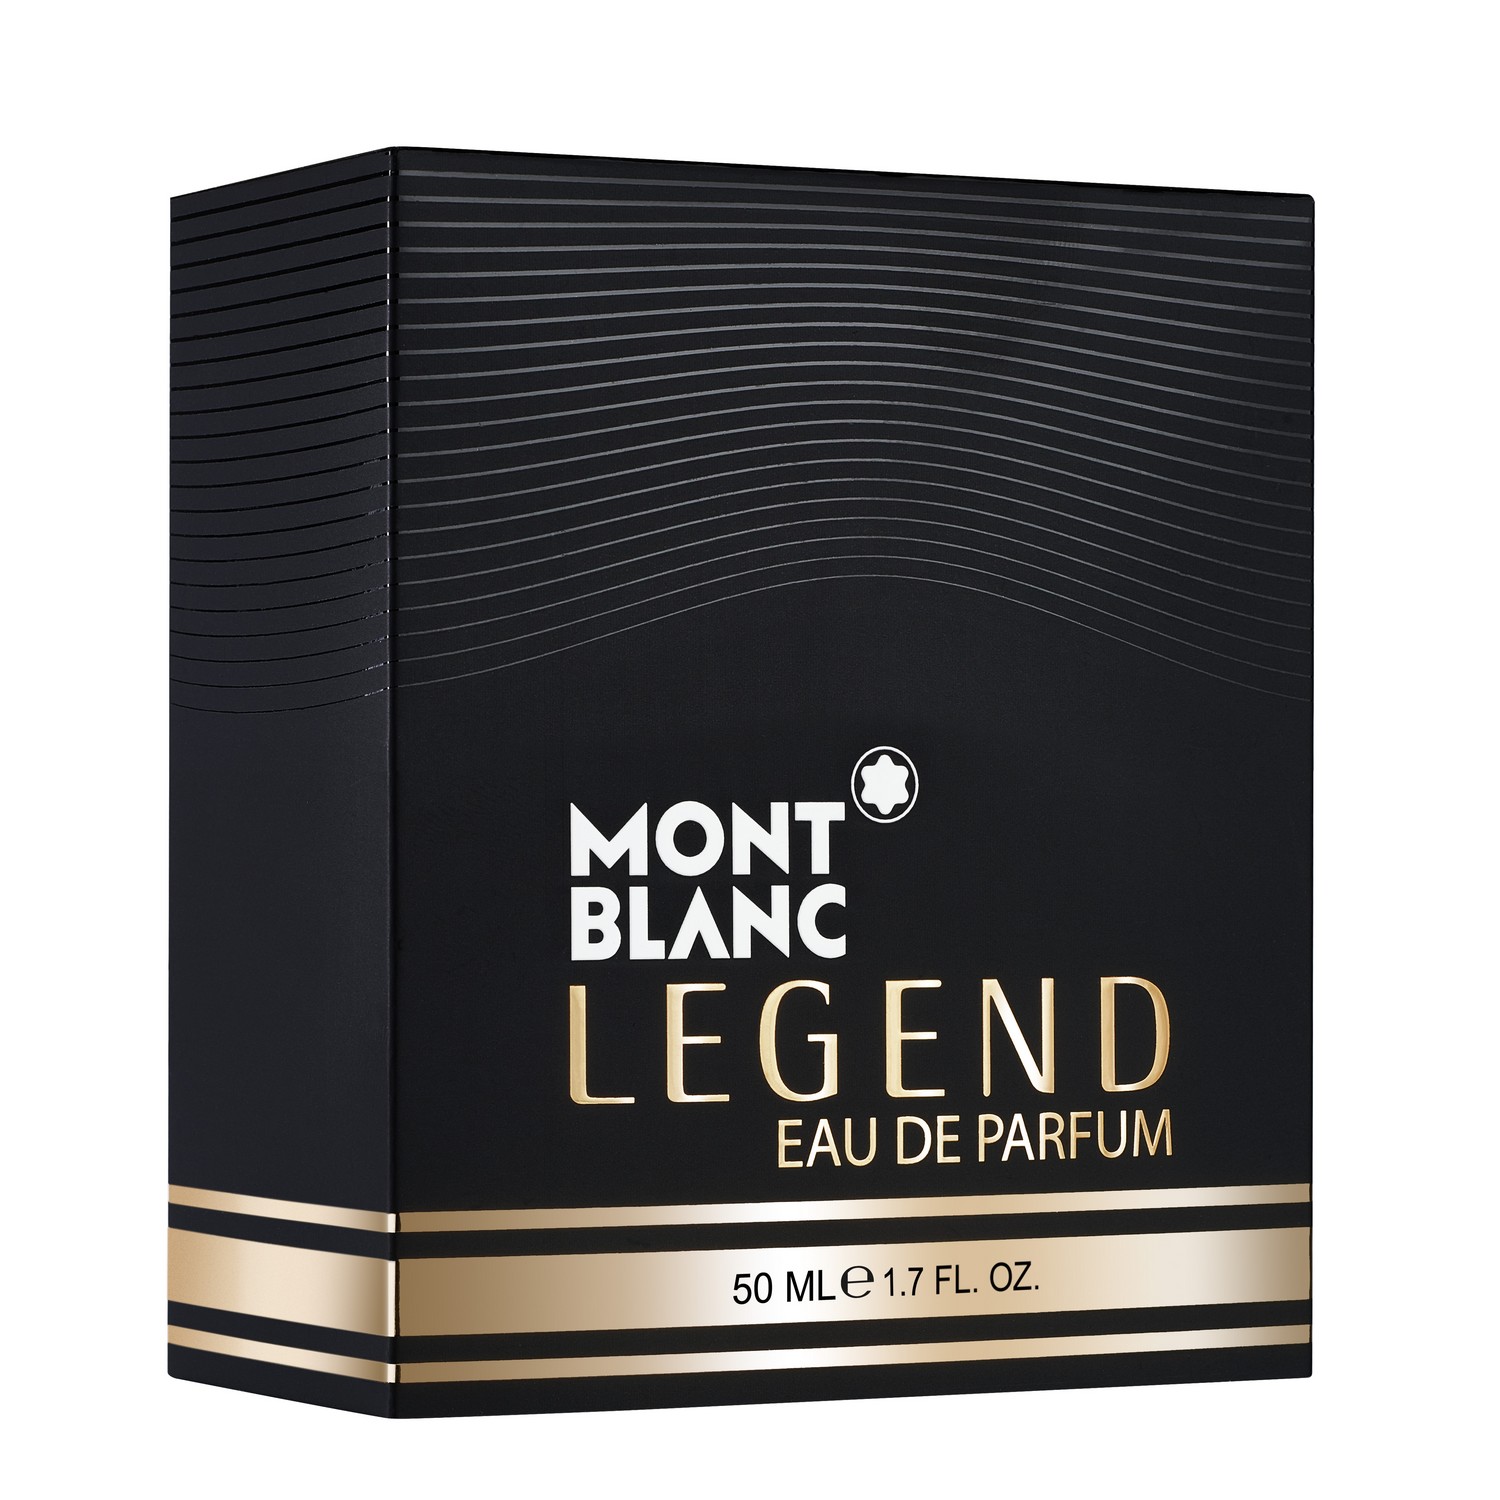 Montblanc Legend Eau de Parfum 50ml